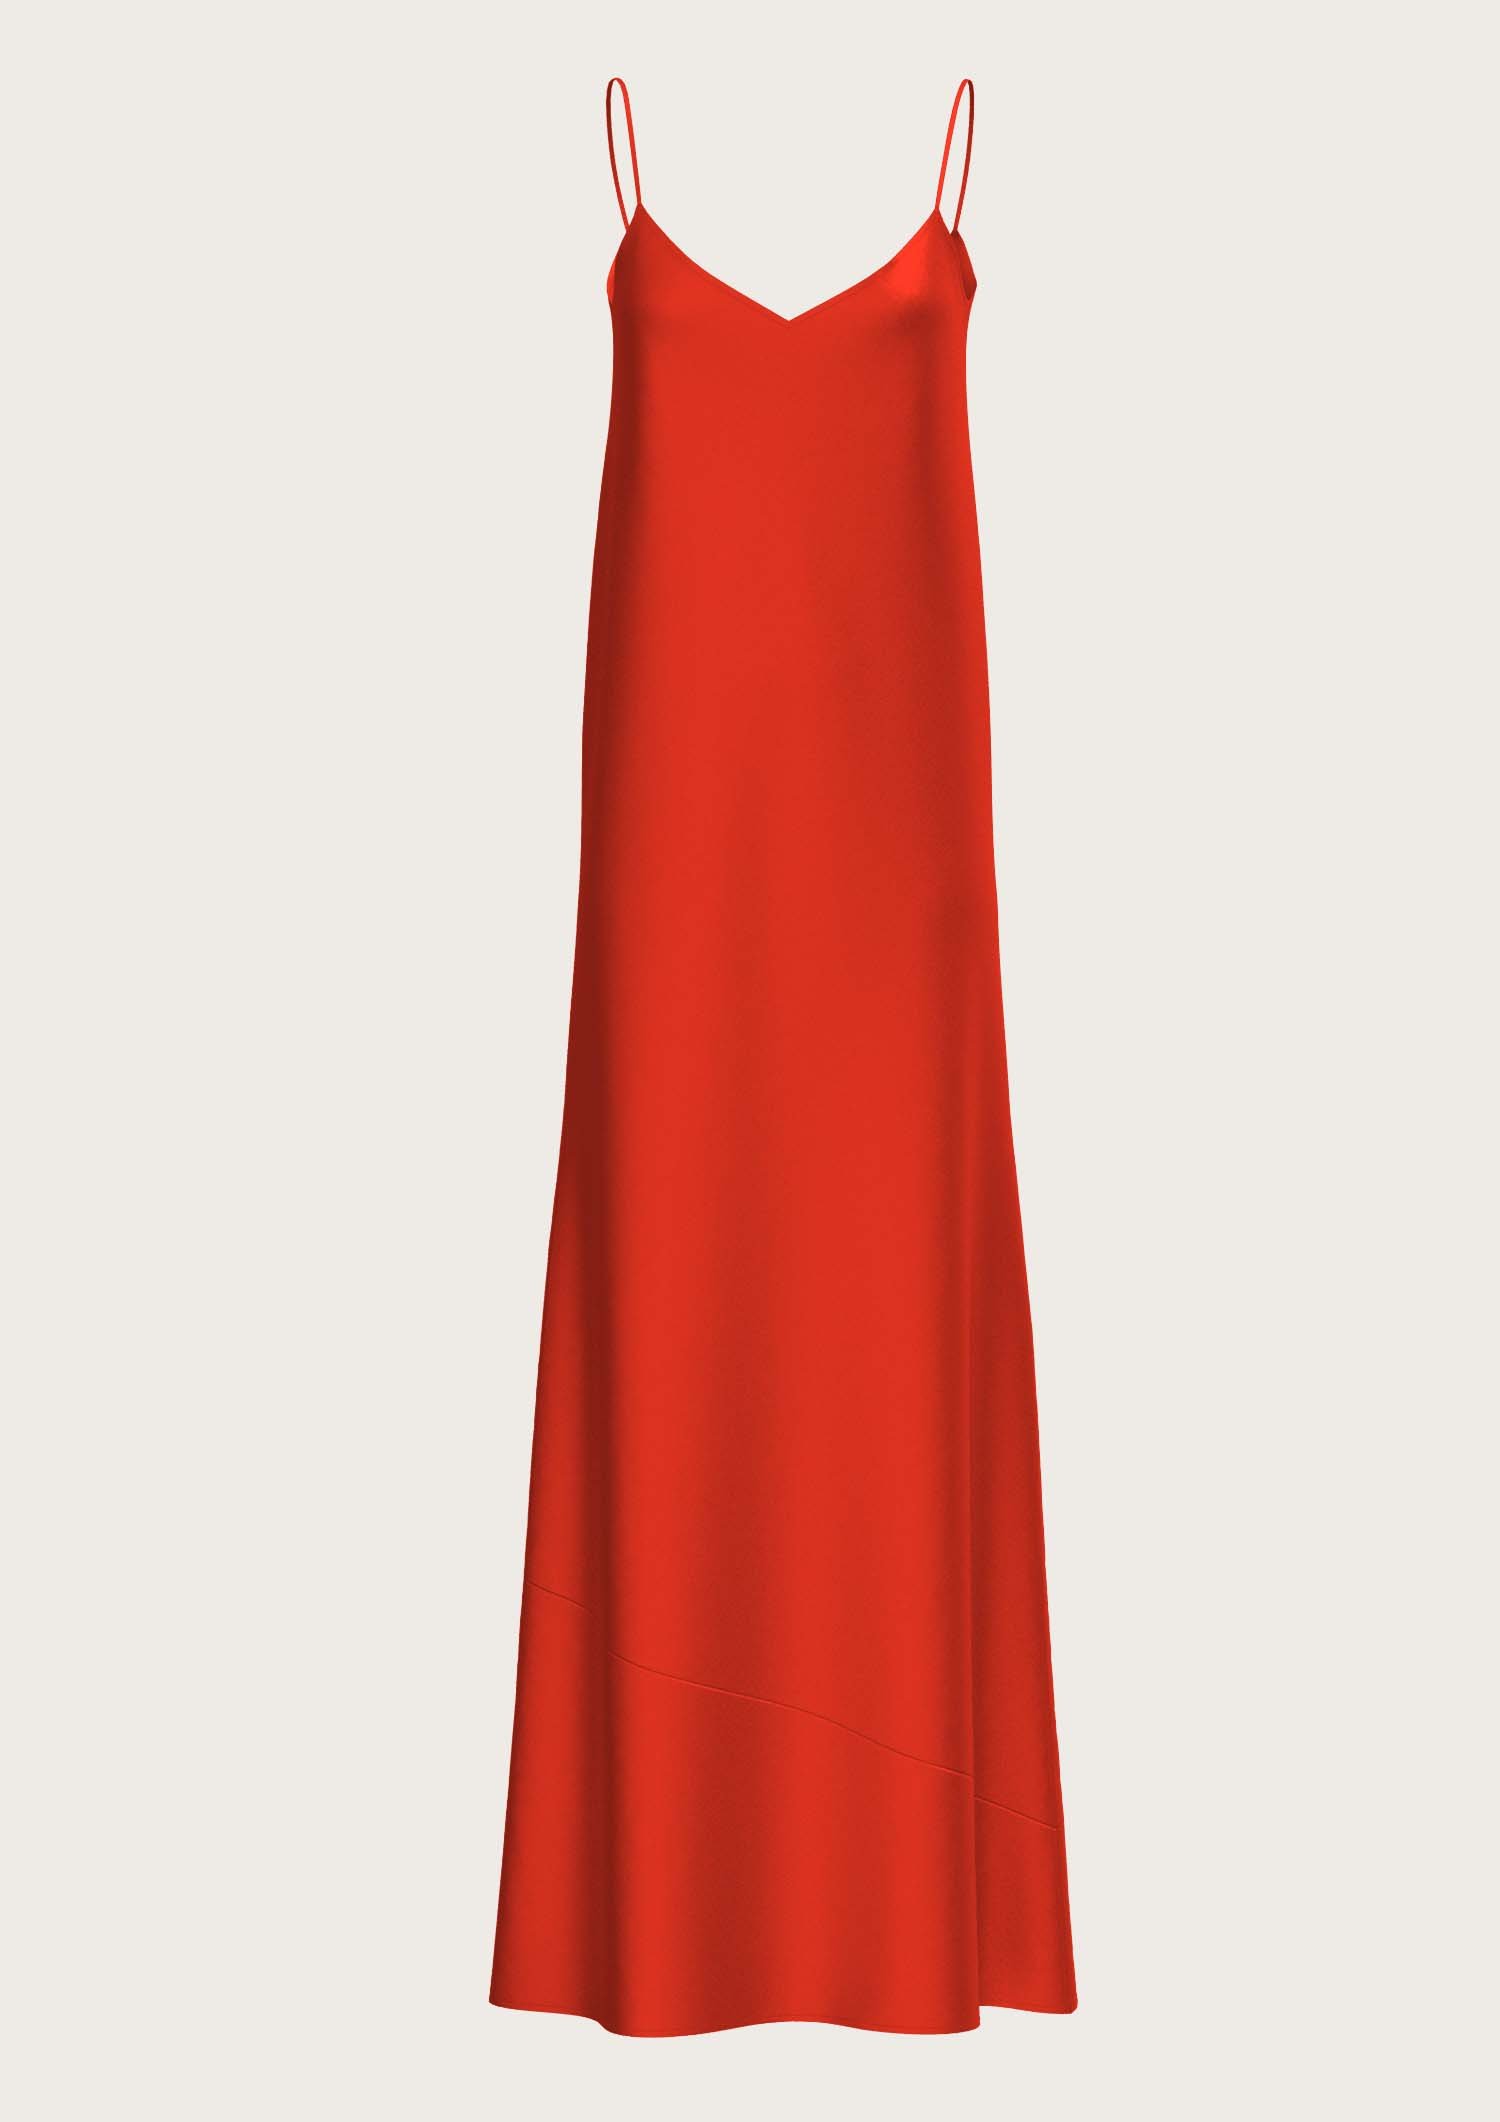 Silk Long Slip Dress Antoine in Red (Kopie)